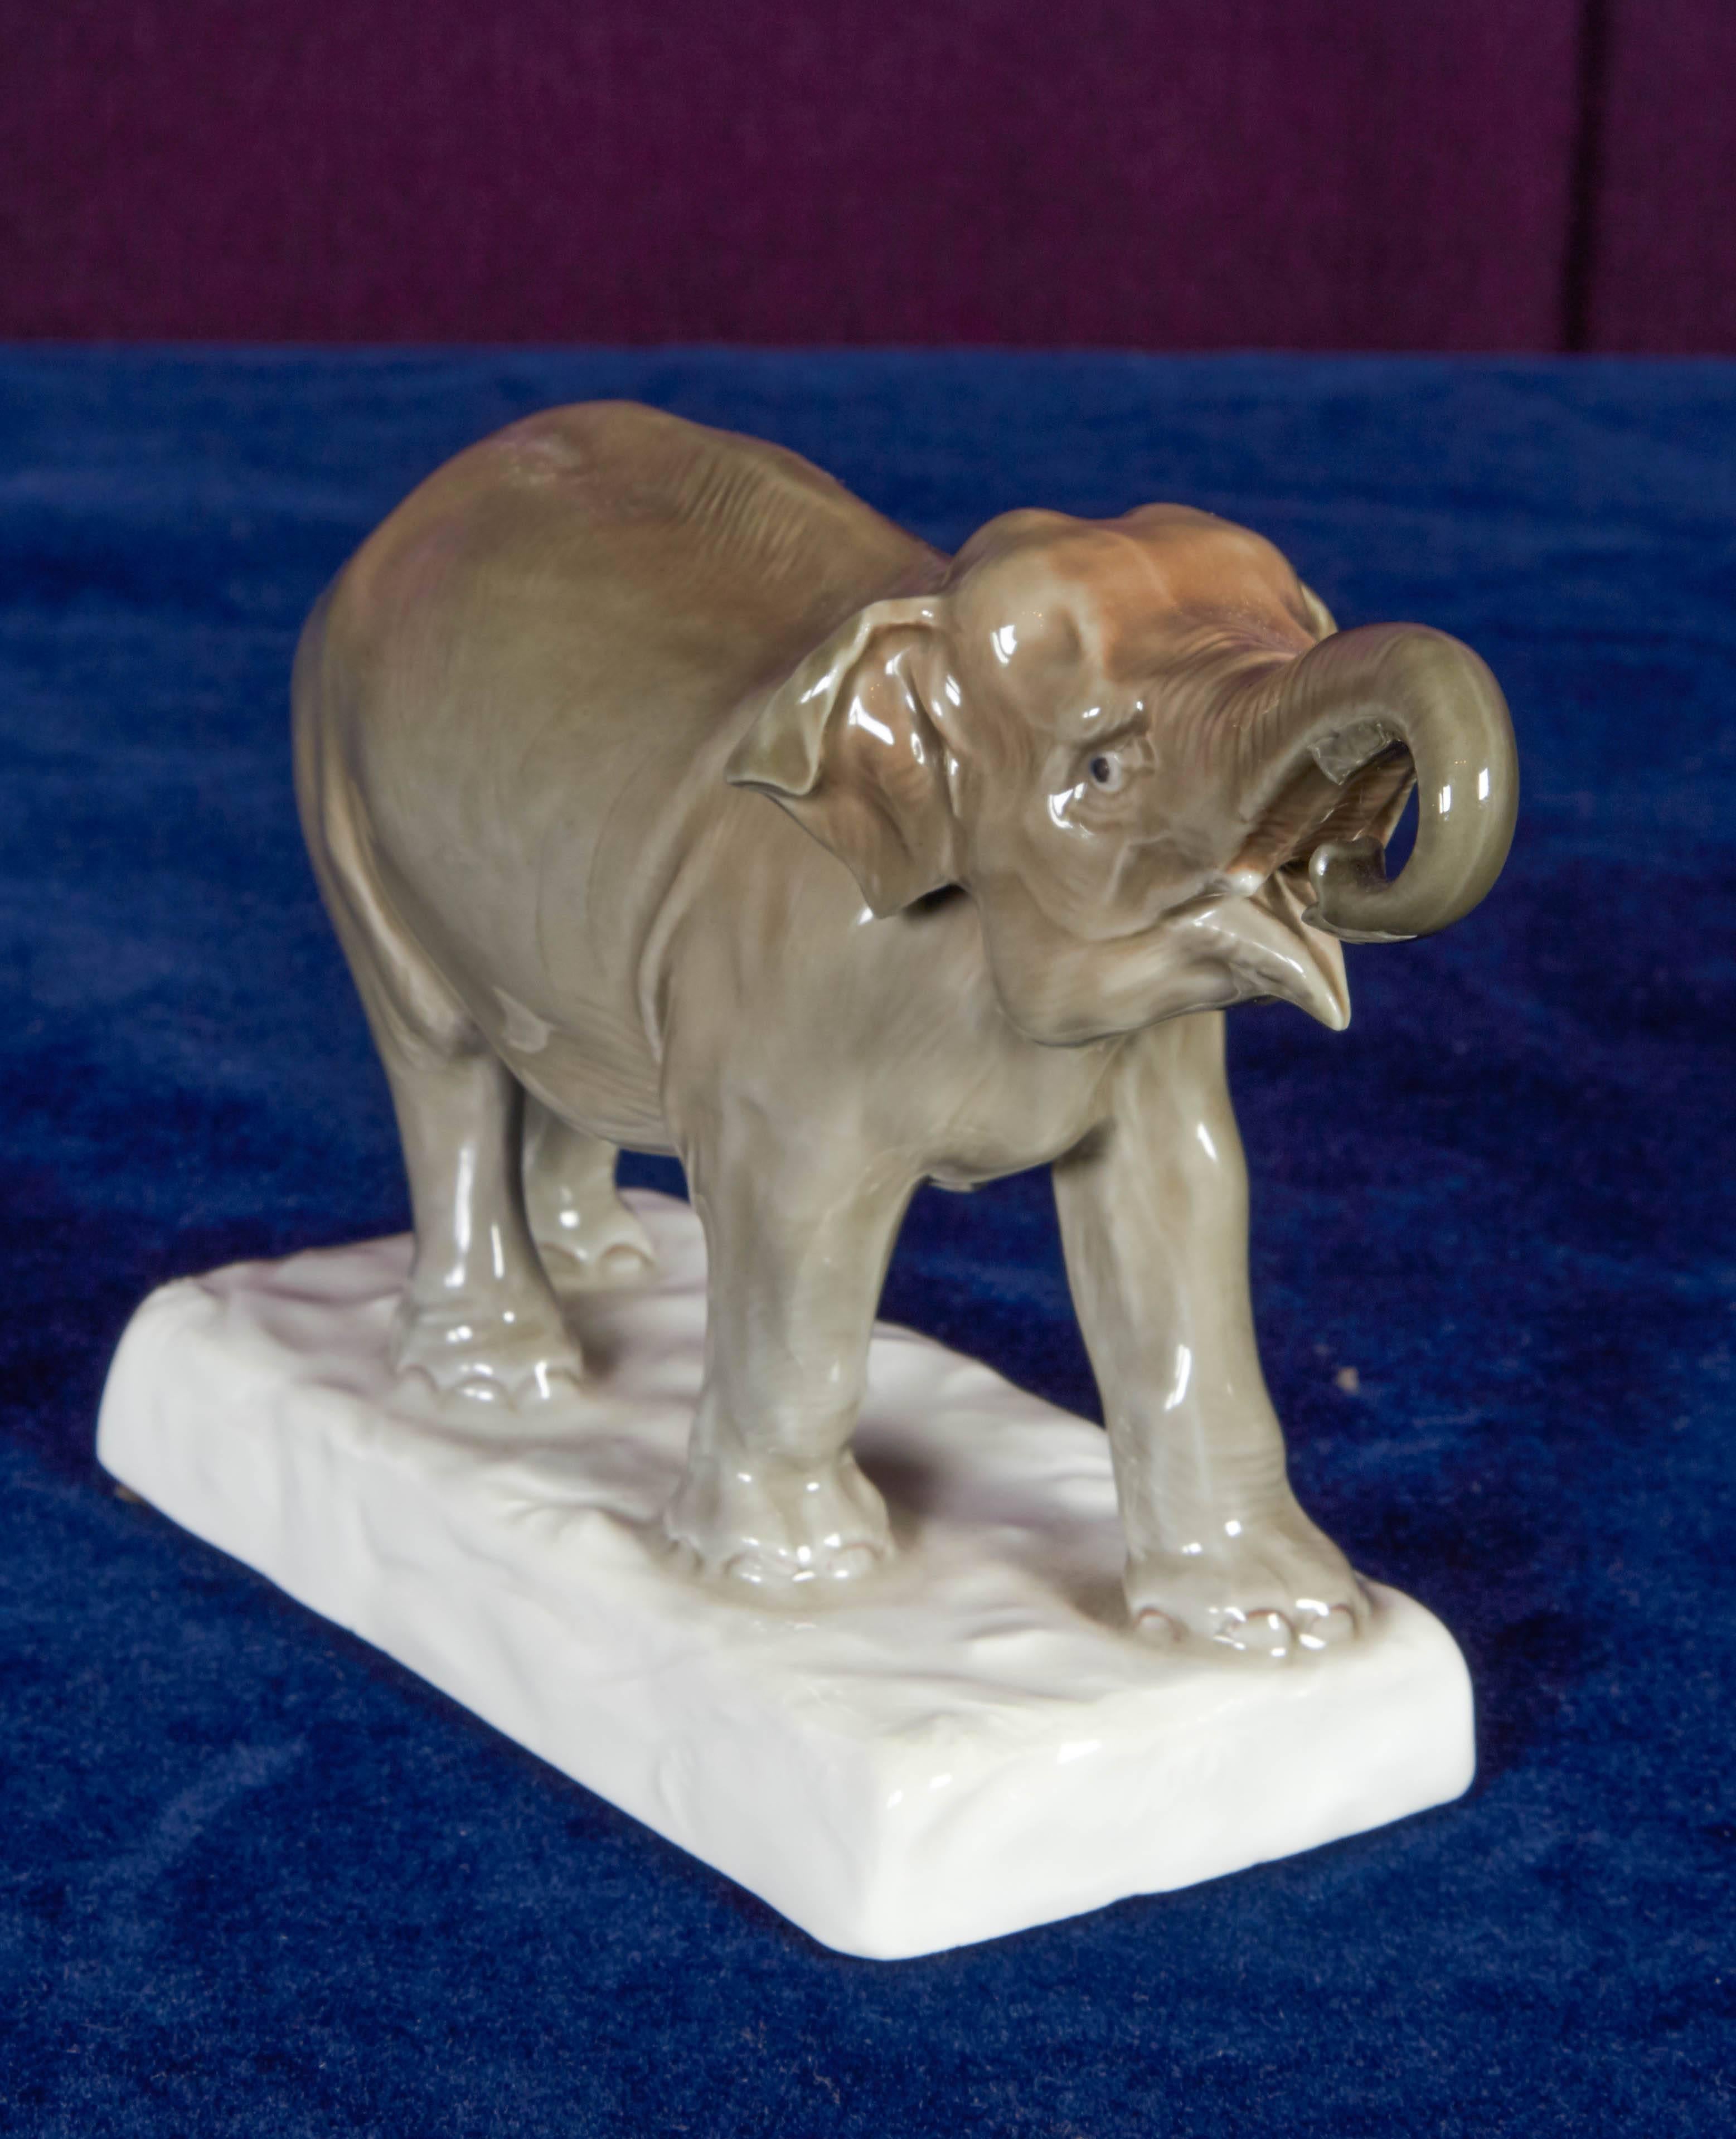 Eine in sorgfältiger Handarbeit gefertigte und handbemalte Meissener Porzellanfigur eines Elefanten. Der Künstler hat mit seinen Pinselstrichen und der Vermischung von Grau- und Brauntönen auch den kleinsten Falten besondere Aufmerksamkeit gewidmet